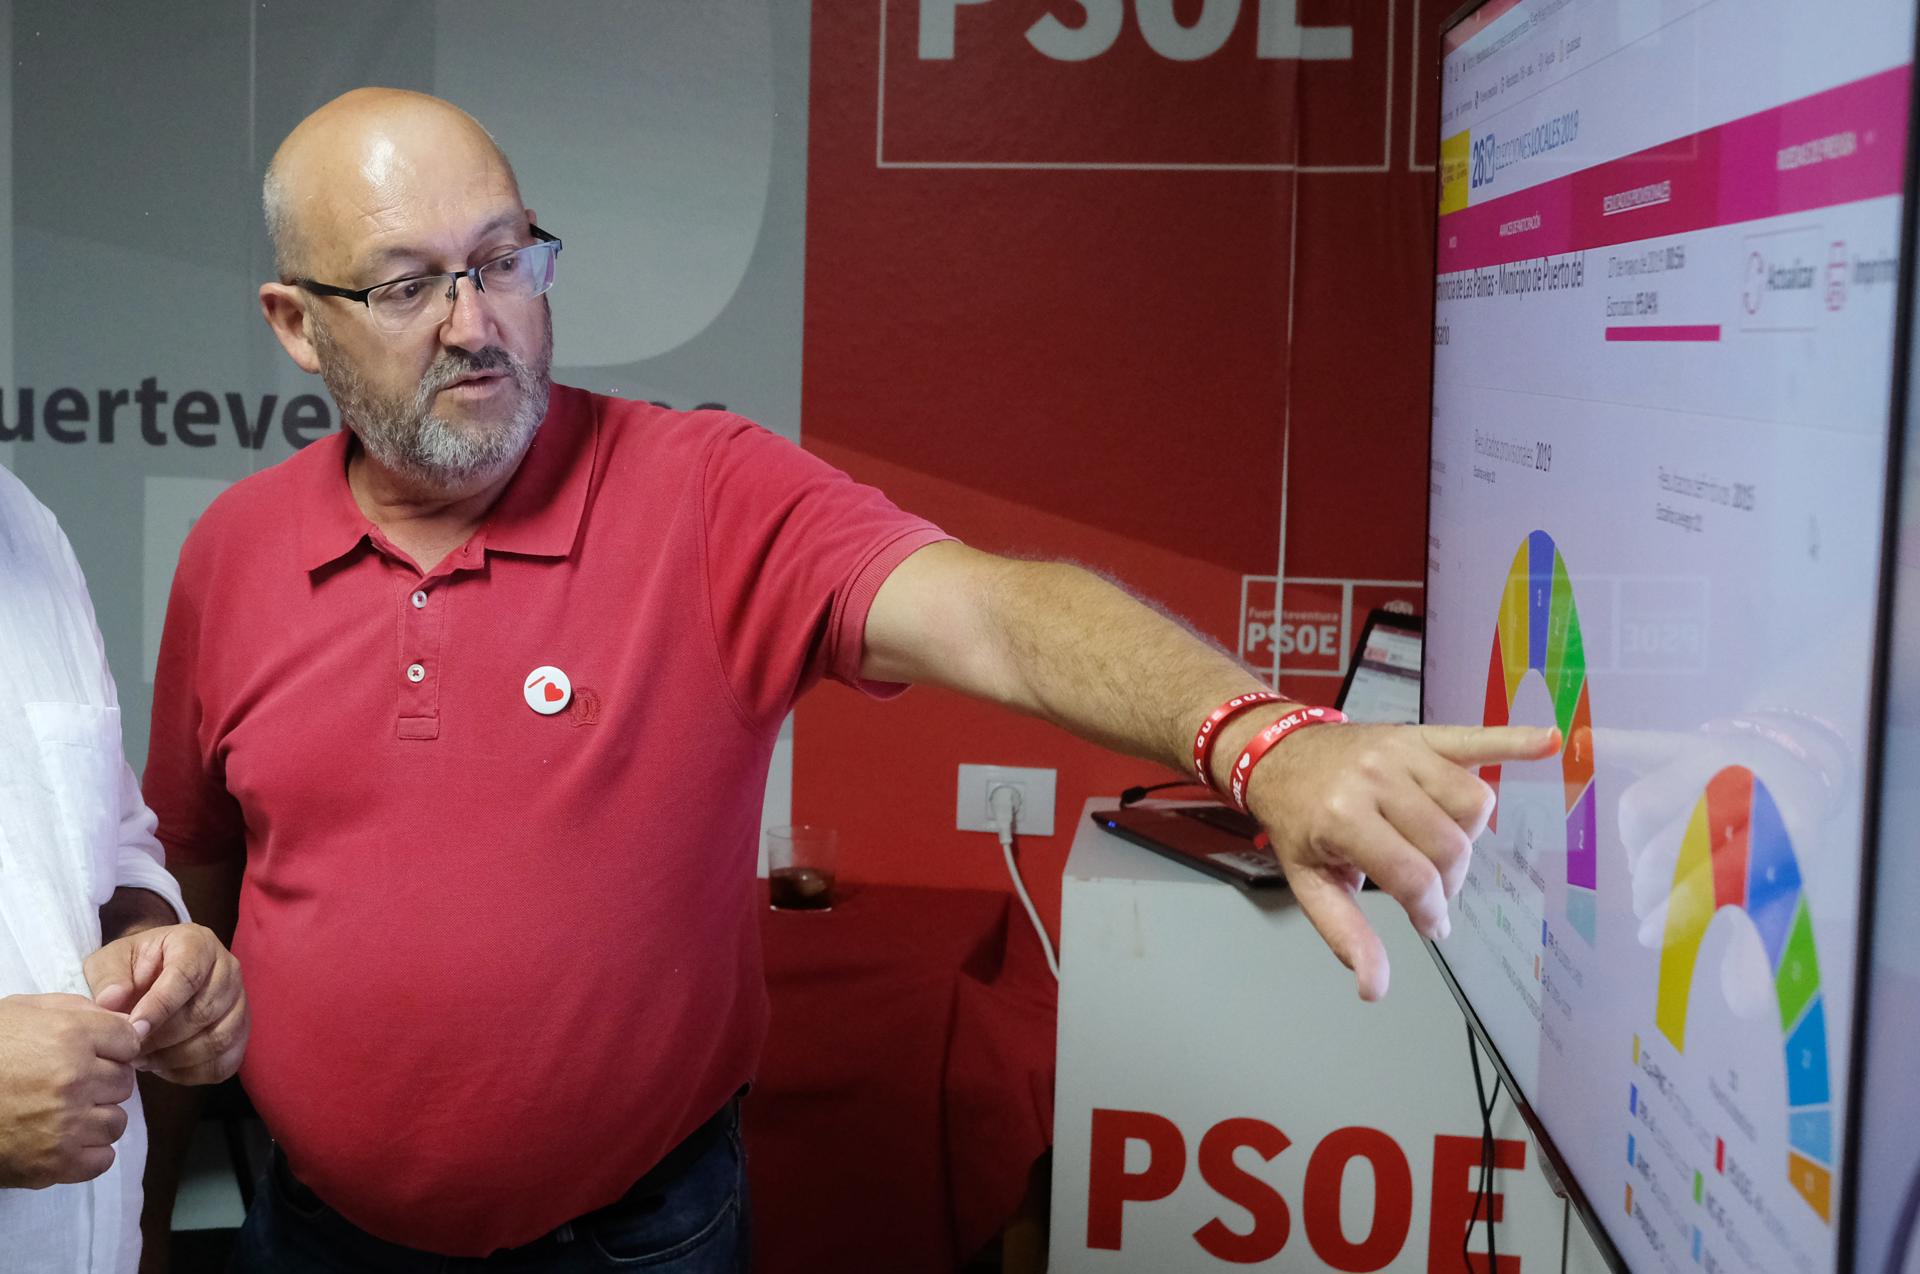 Foto de archivo del exdiputado del PSOE en el Congreso y presunto cabecilla del "caso Mediador", Juan Bernardo Fuentes Curbelo. EFE/Carlos de Saá